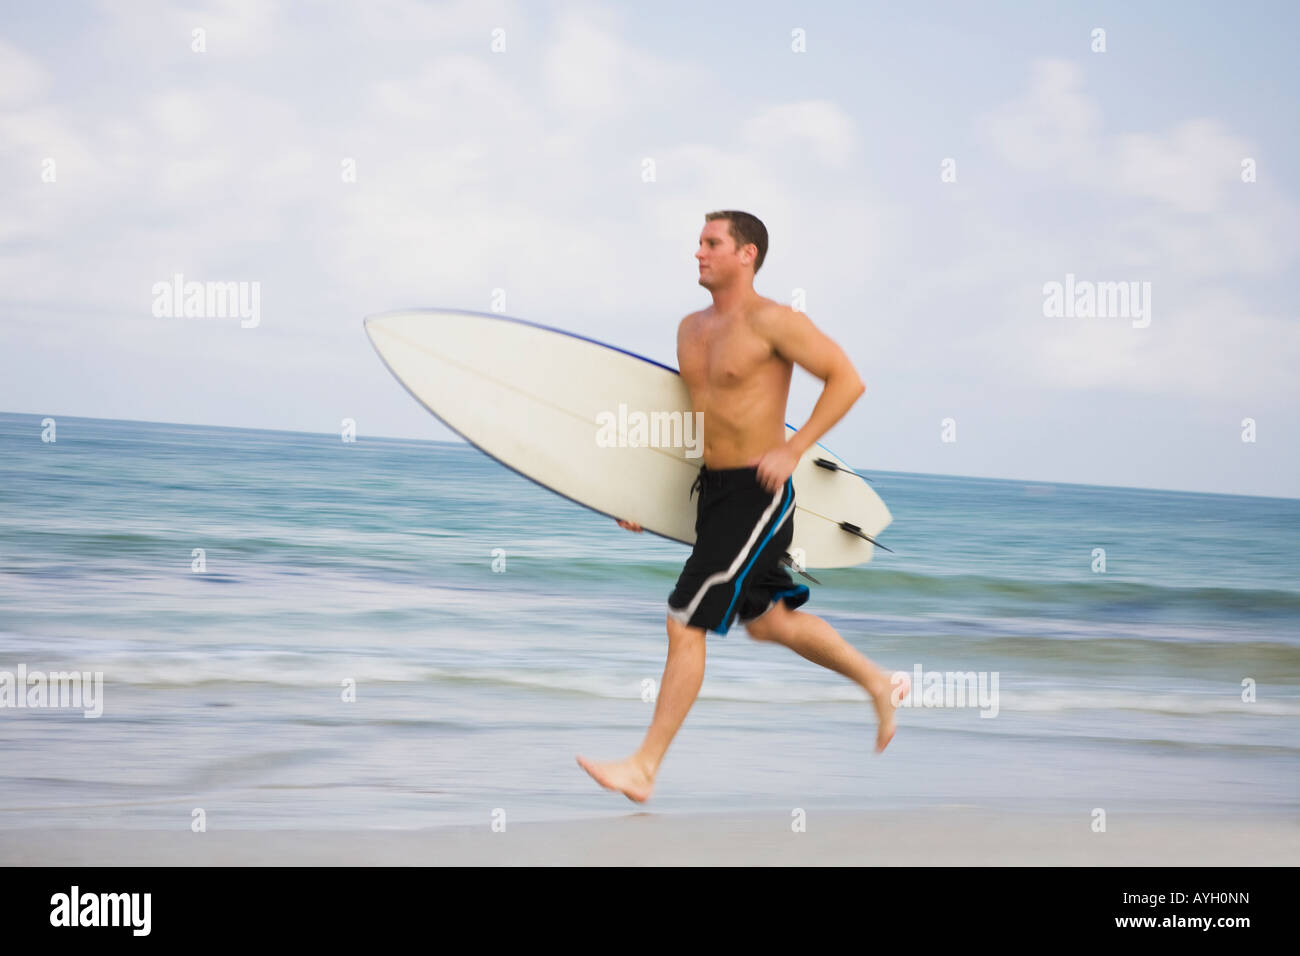 Bare-chested uomo correre con la tavola da surf Foto Stock